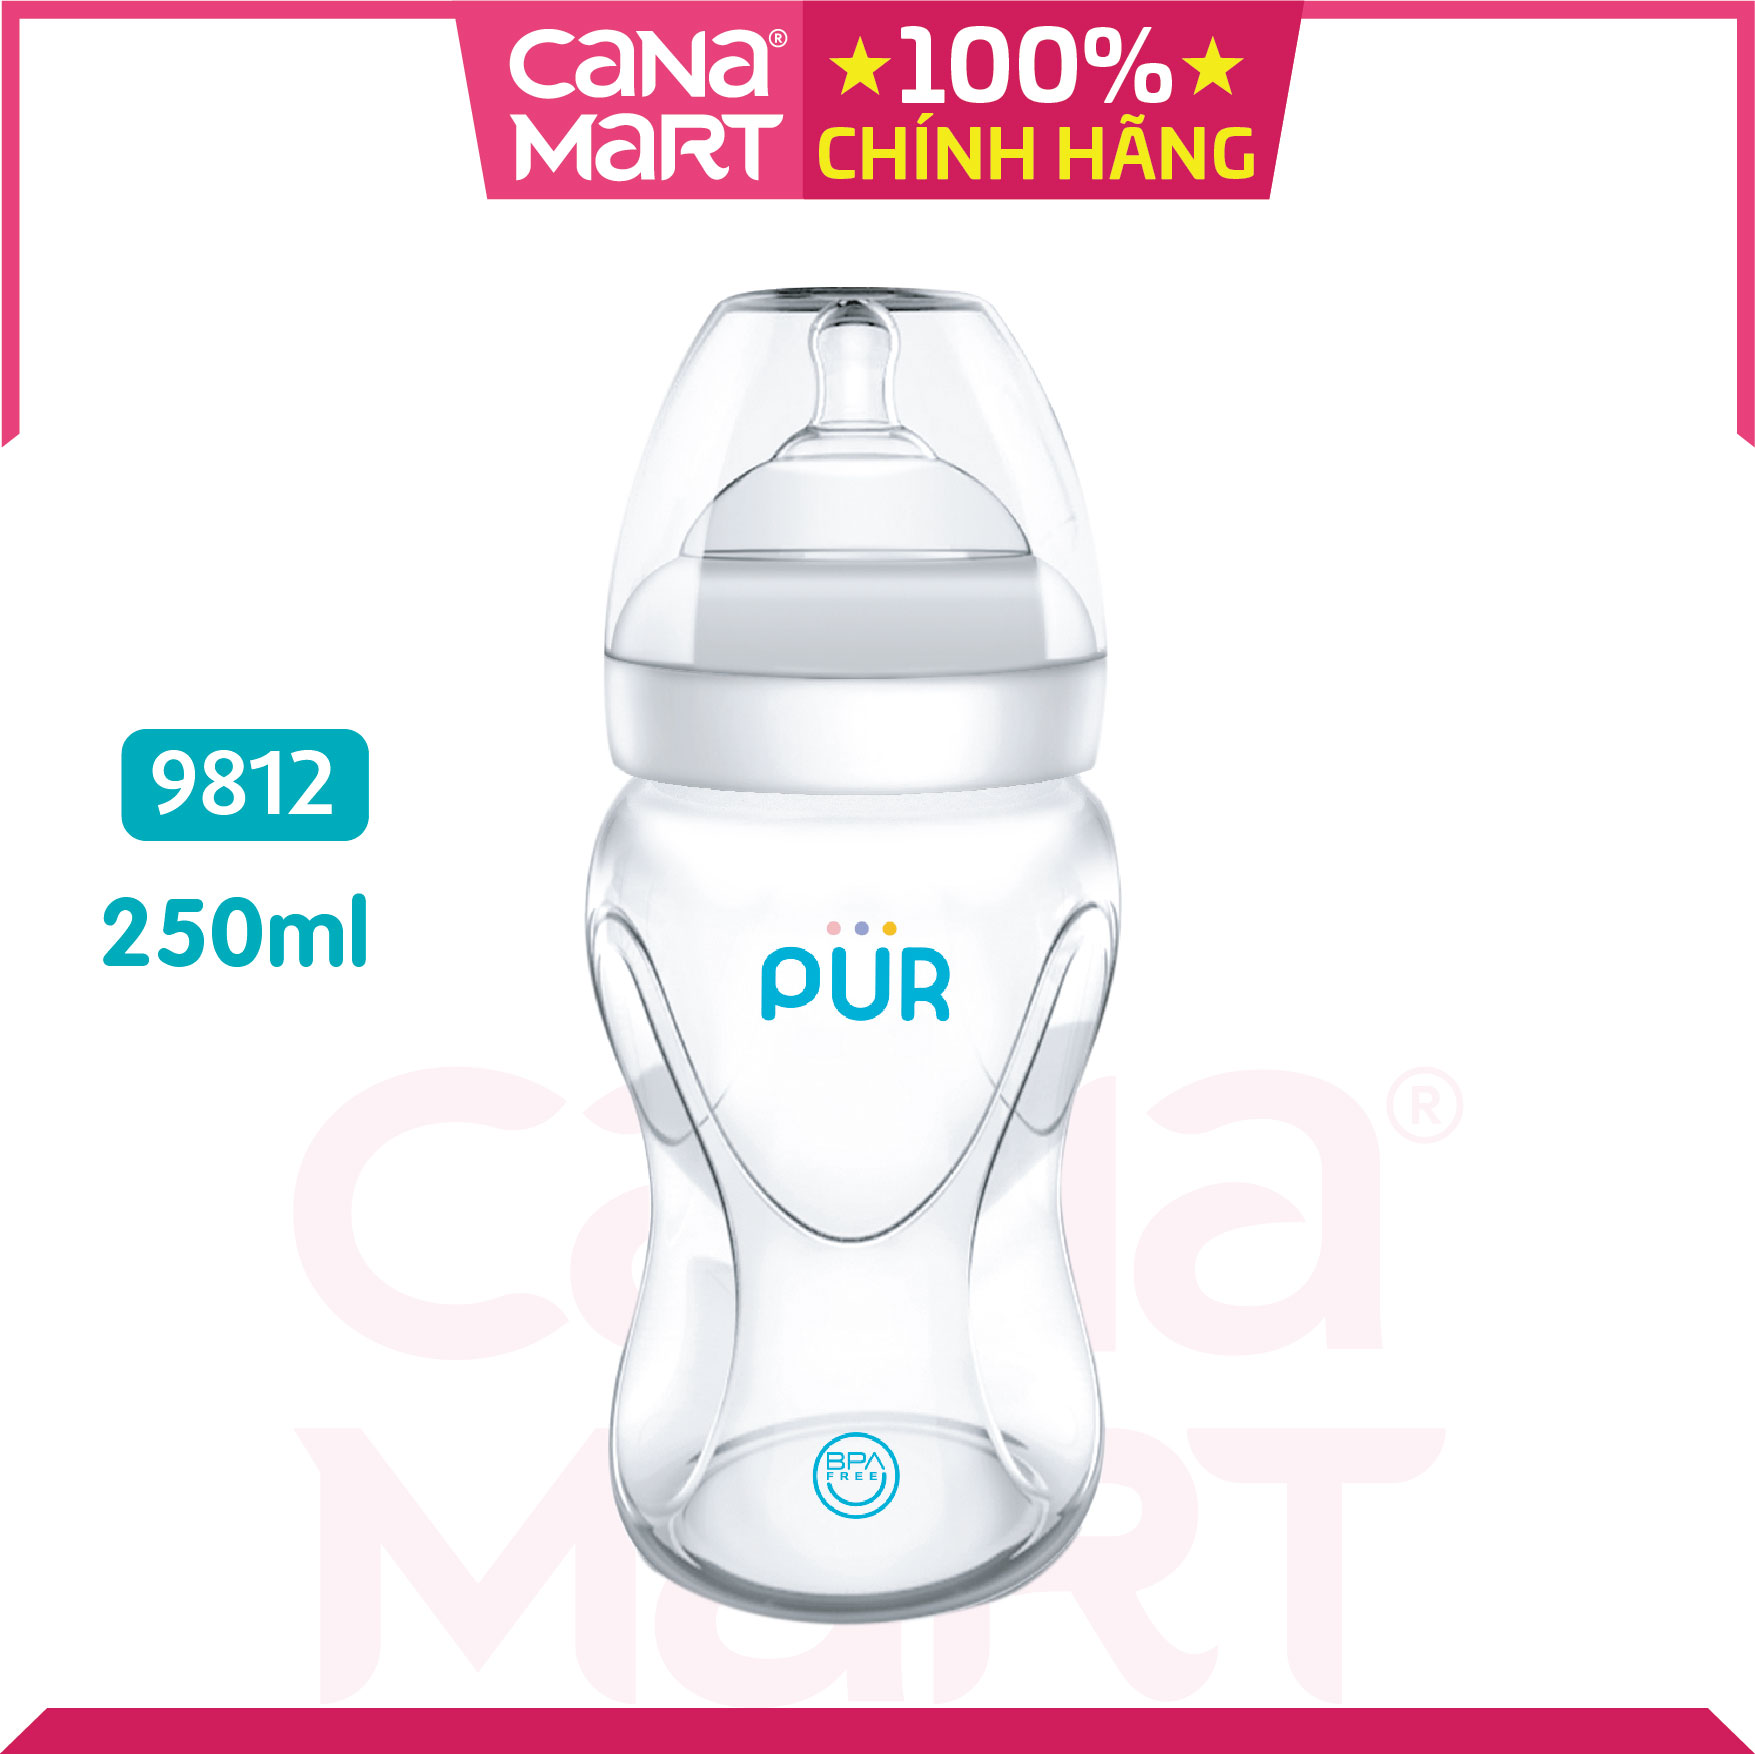 Bình sữa cổ rộng Milk Safe Pur 250ml không chứa BPA 9812